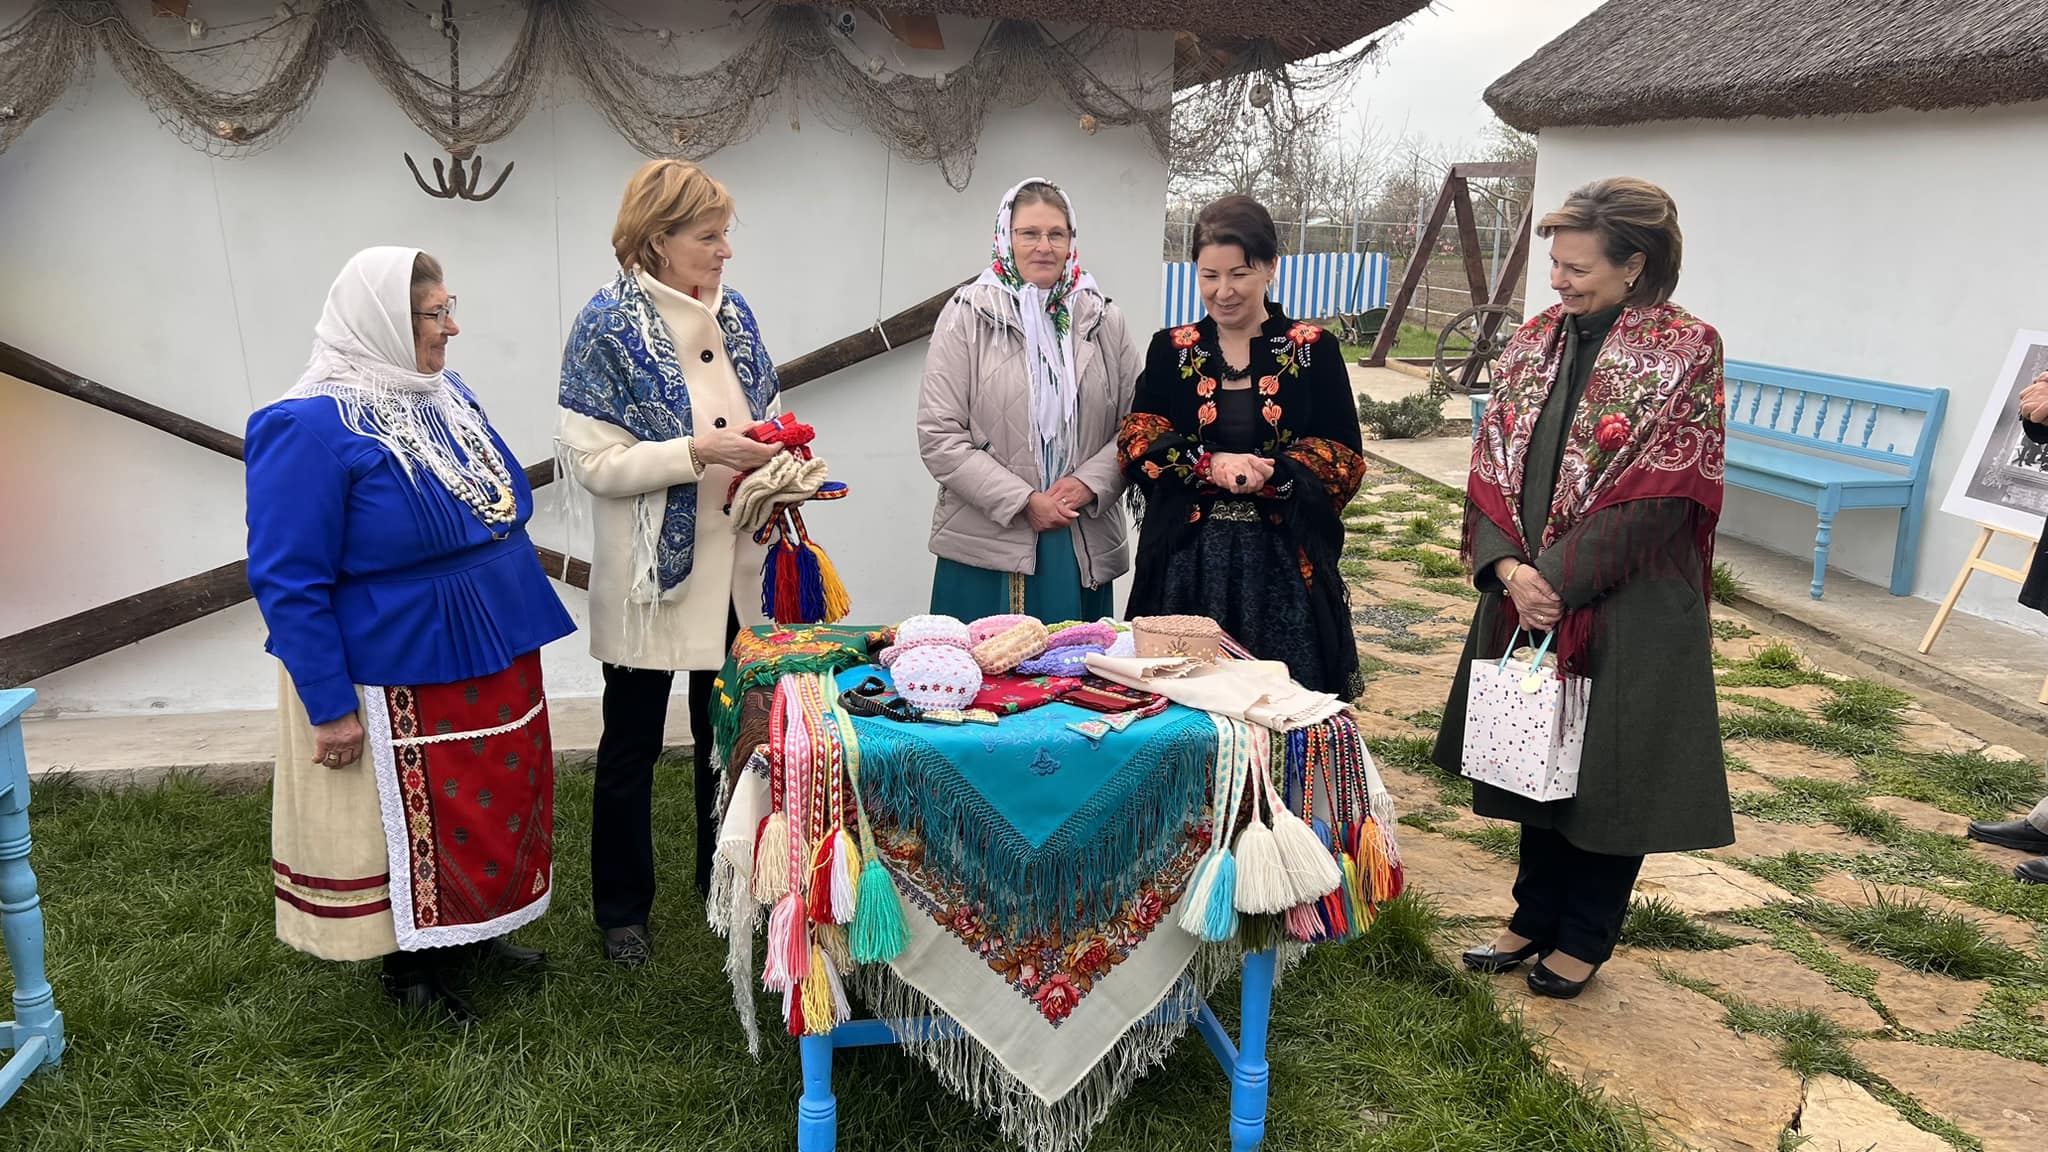 O nouă vizită regală în Jurilovca, la distanță de 24 de ani